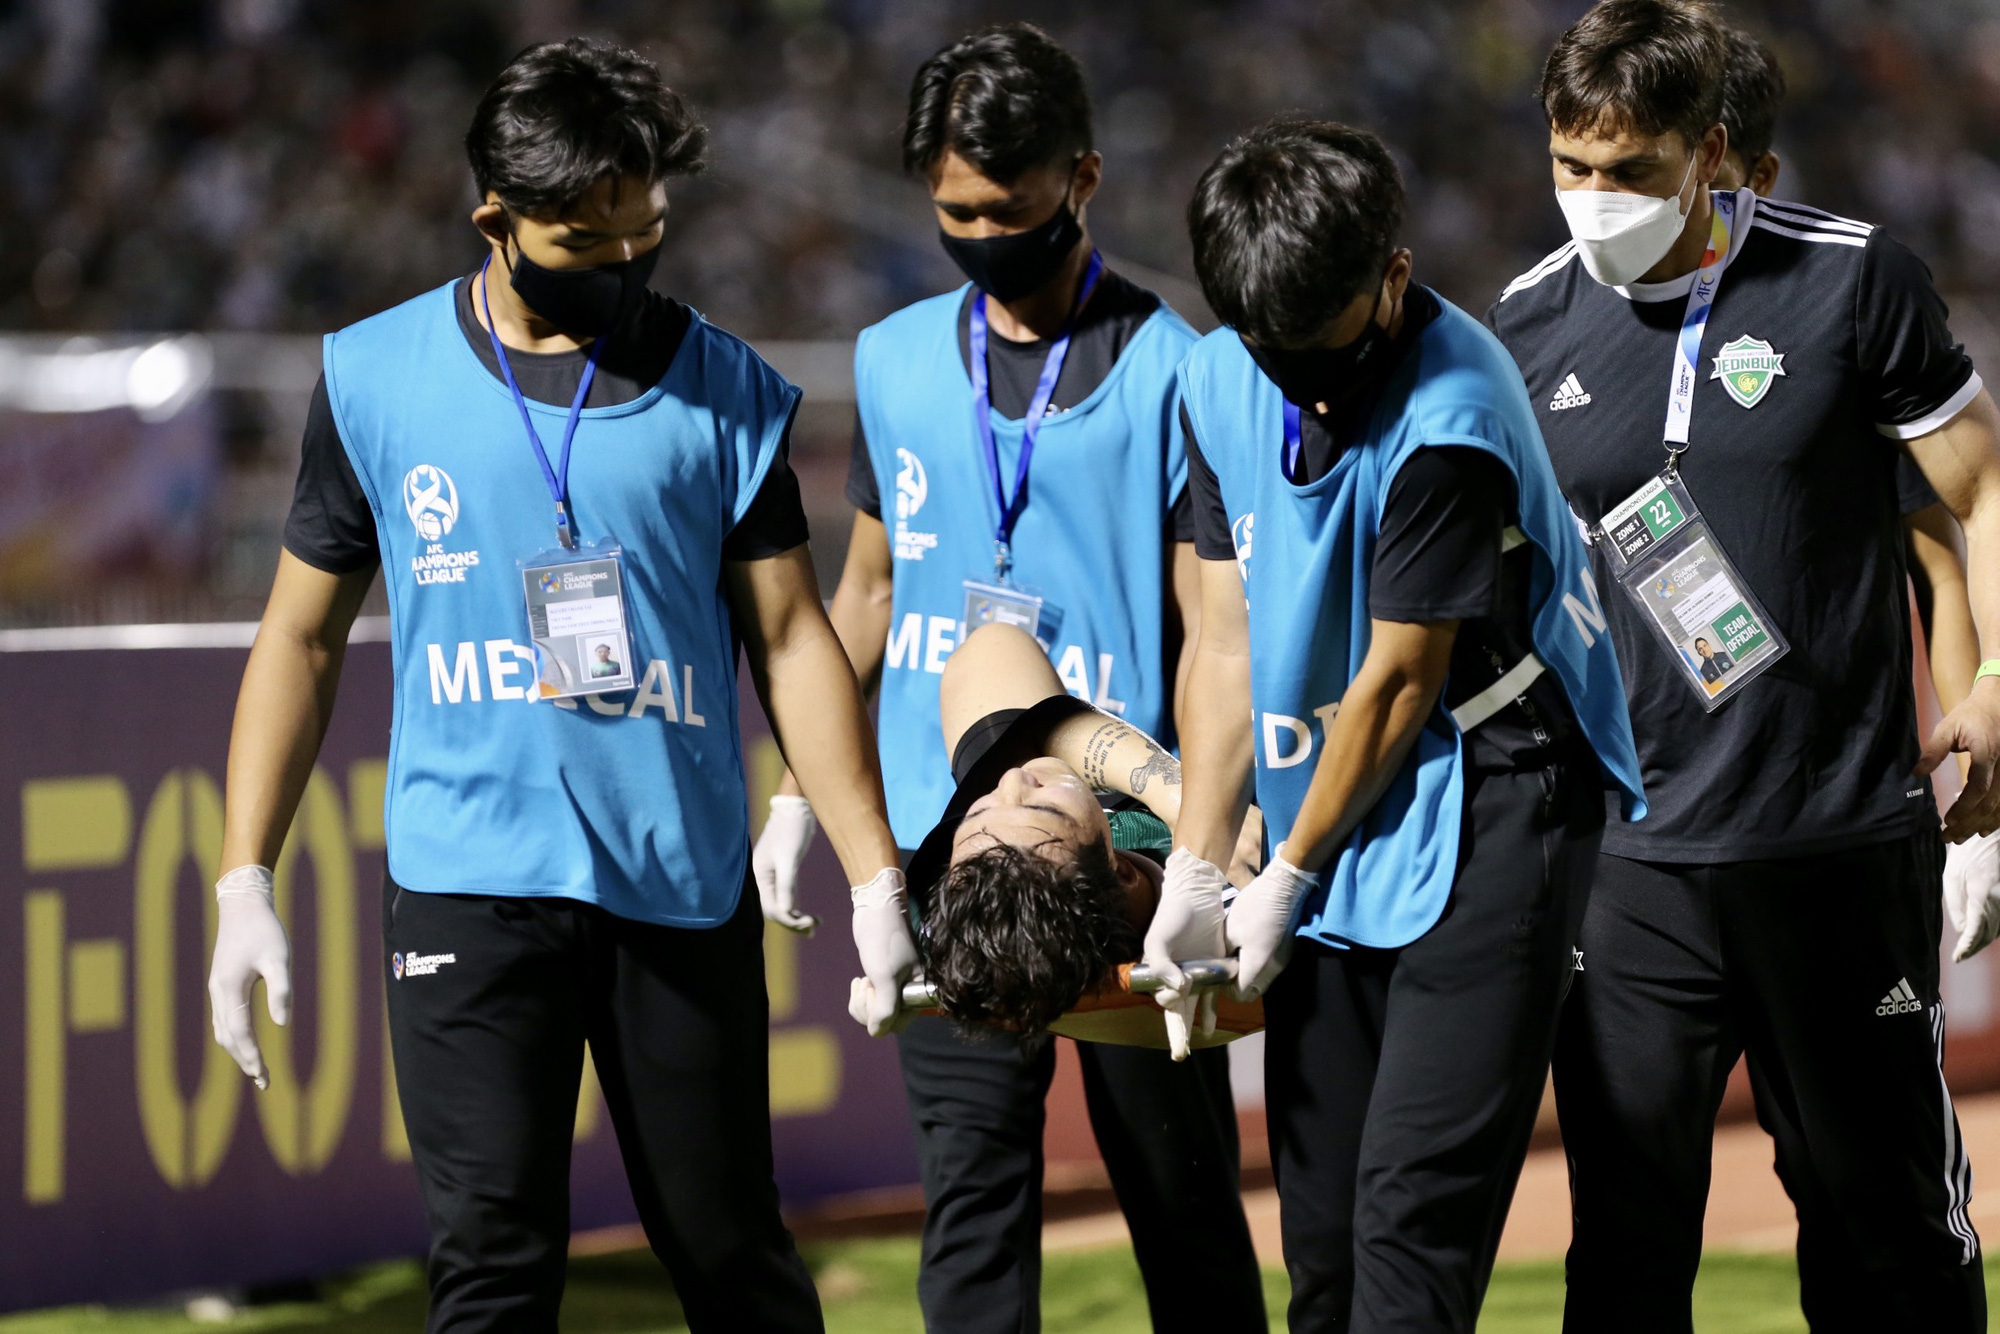 Cầu thủ Hàn Quốc nhập viện cấp cứu sau va chạm với Hồng Duy - Ảnh 4.